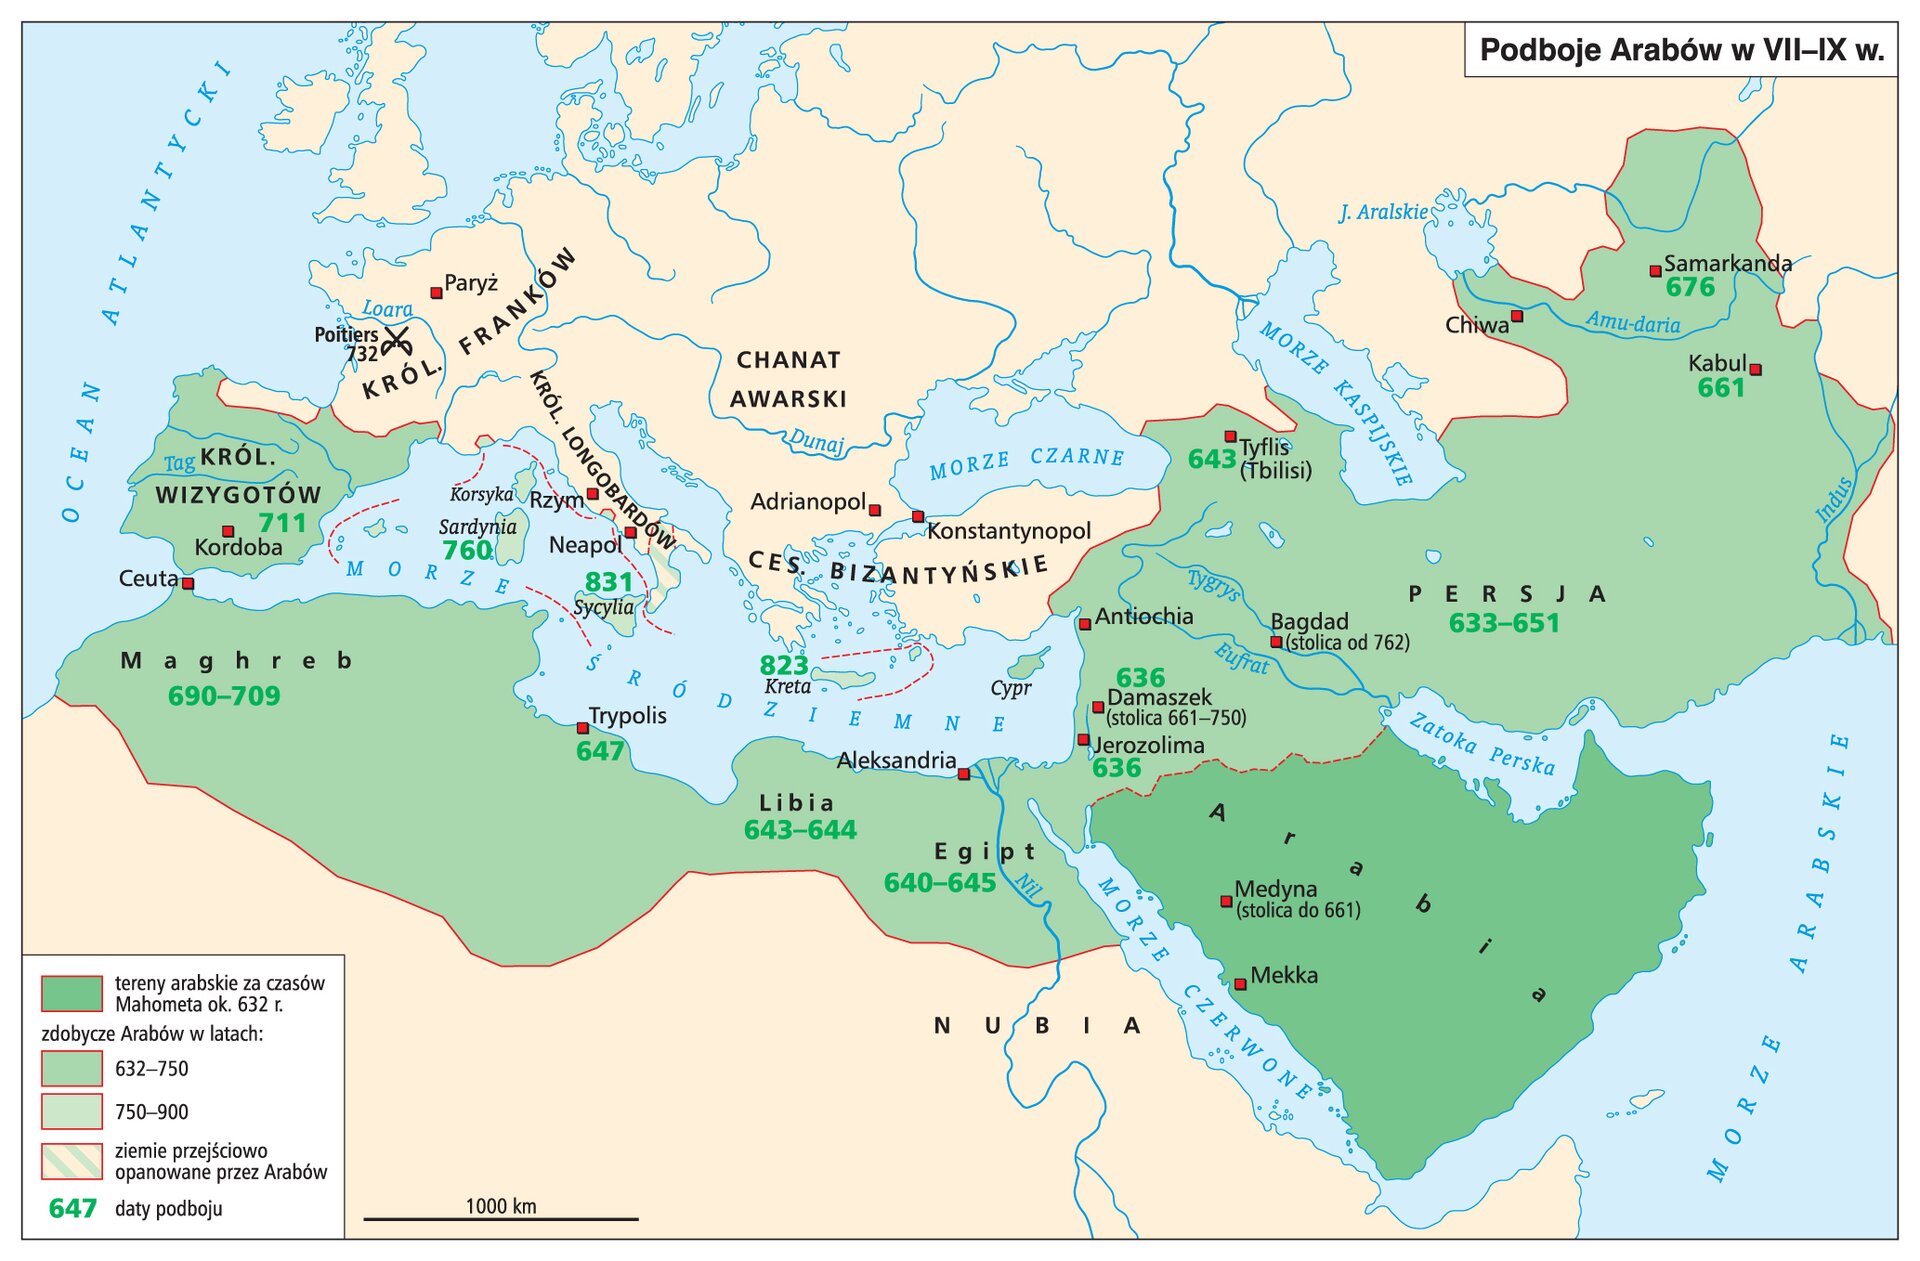 Mapa przedstawia podboje Arabów w VII‑IX wieku. Tereny arabskie za czasów Mahometa (około 632 roku) to: Arabia z miastami Medyną (stolica do 661 roku: i Mekką. Zdobycze Arabów w latach 632‑750 to: Jerozolima (636 rok), Damaszek (636 rok, stolica w latach 661‑750), Cypr, Bagdad (stolica od 762 roku), Tyflis (Tbilisi) 643 rok, Persja (lata 633‑651), Kabul (661 rok), Samarkanda (676 rok), Egipr (lata 640‑645), Libia (lata 643‑644), Trypolis (647 rok), Maghreb (lata 690‑709) oraz królestwo Wizygotów (711 rok). Zdobycze Arabów w latach 750‑900 to: Korsyka, Sardynia (760 rok), Sycylia (831 rok) oraz Kreta (823 rok). Ziemie częściowo opanowane przez Arabów to południowe Włochy.